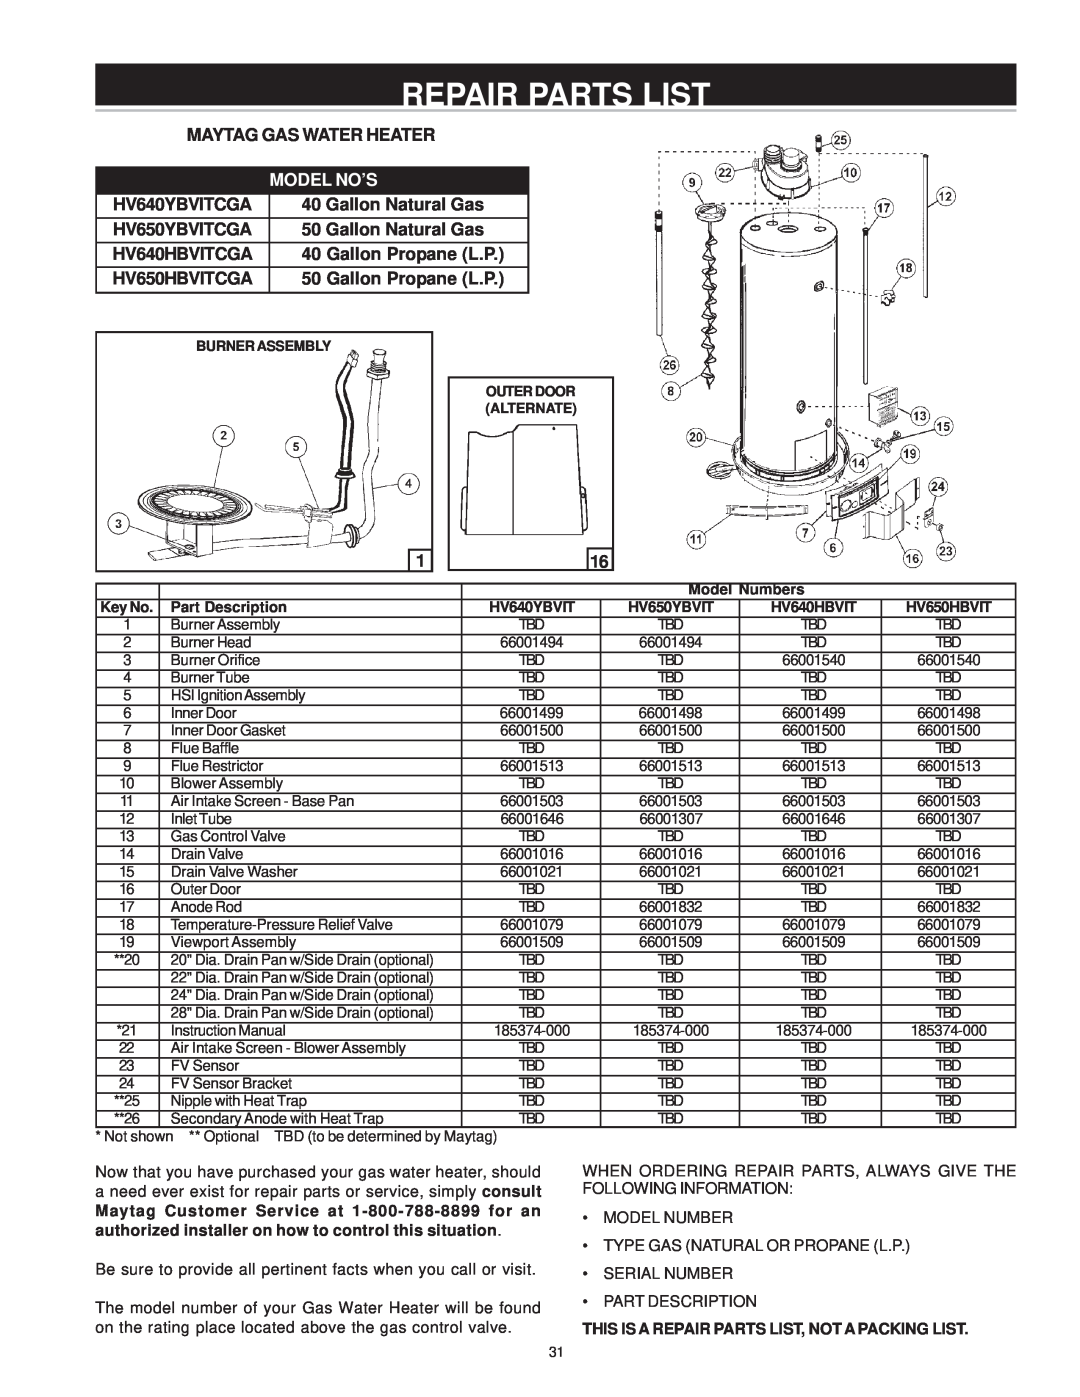 Maytag HV640HBVITCGA, HV650HBVITCGA, HV640YBVITCGA, HV650YBVITCGA manual Repair Parts List, Model No’S 